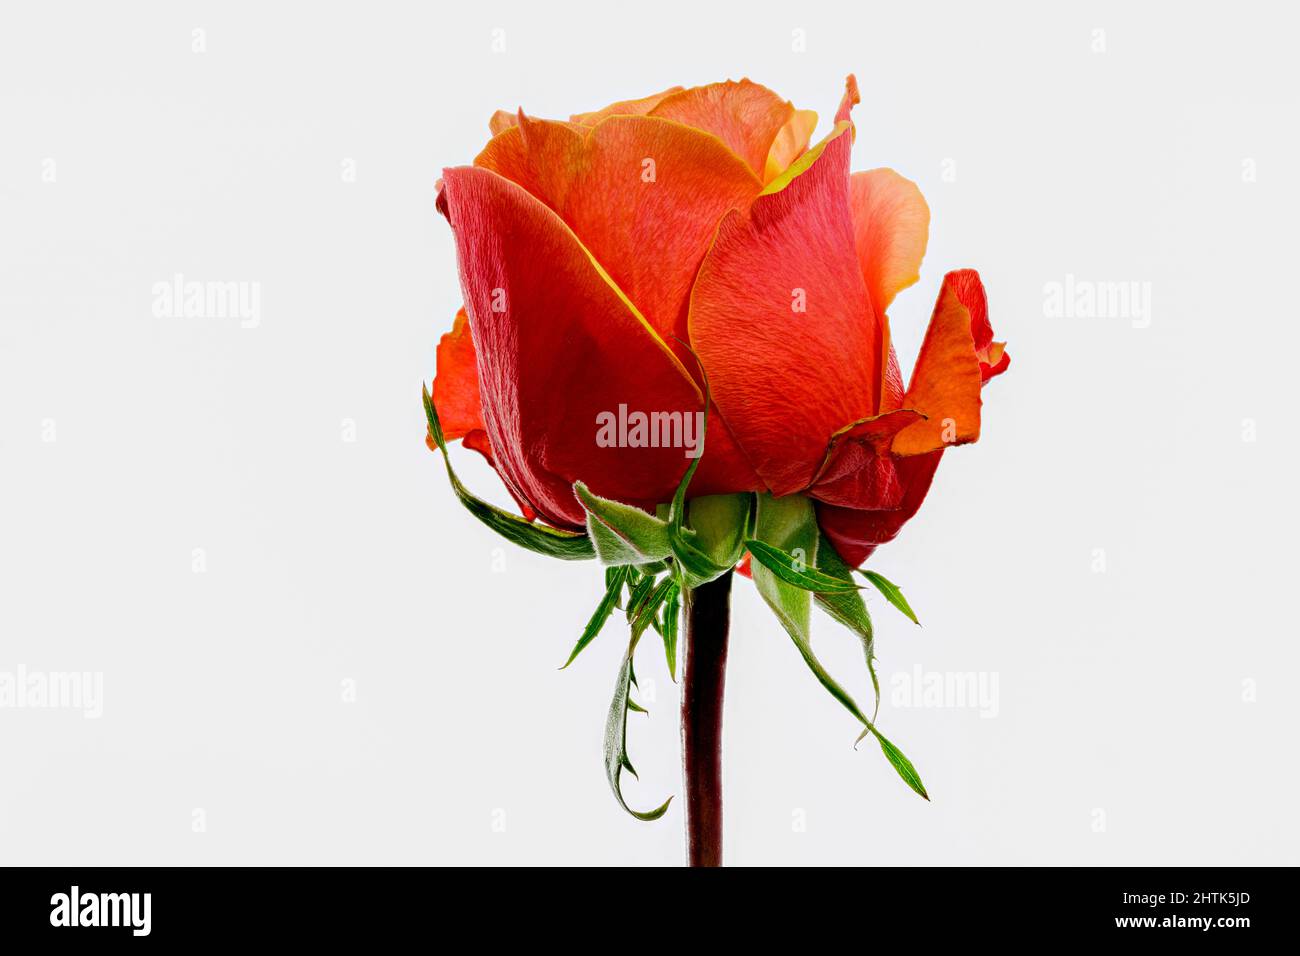 Magnifique rose orange-rouge qui vient d'éclater en fleur Photo Stock -  Alamy